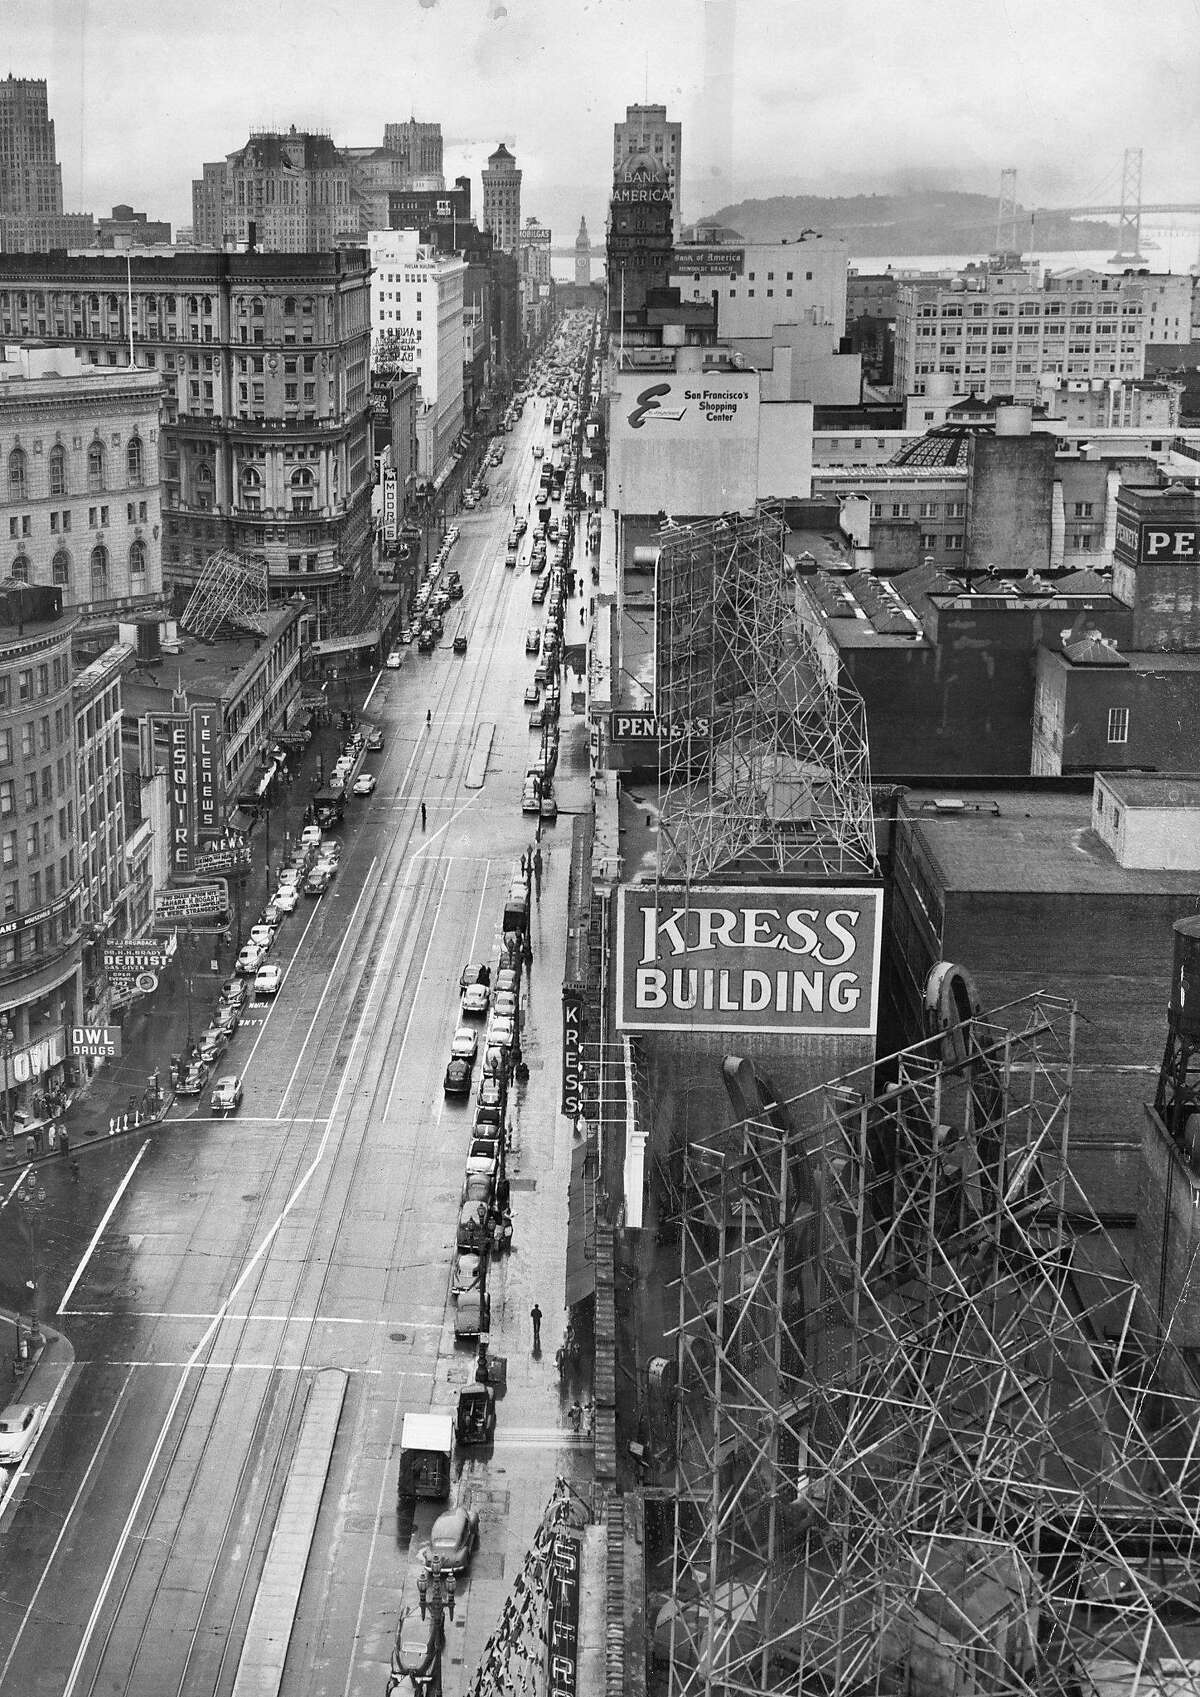 市场街向东看，背景是渡轮大厦和海湾大桥，这幅24 x 18英寸的照片被发现有对角线的裁剪痕迹，显示了照片中央的三分之一。这是我清理掉裁剪痕迹后的样子。照片刊登于1952年2月21日